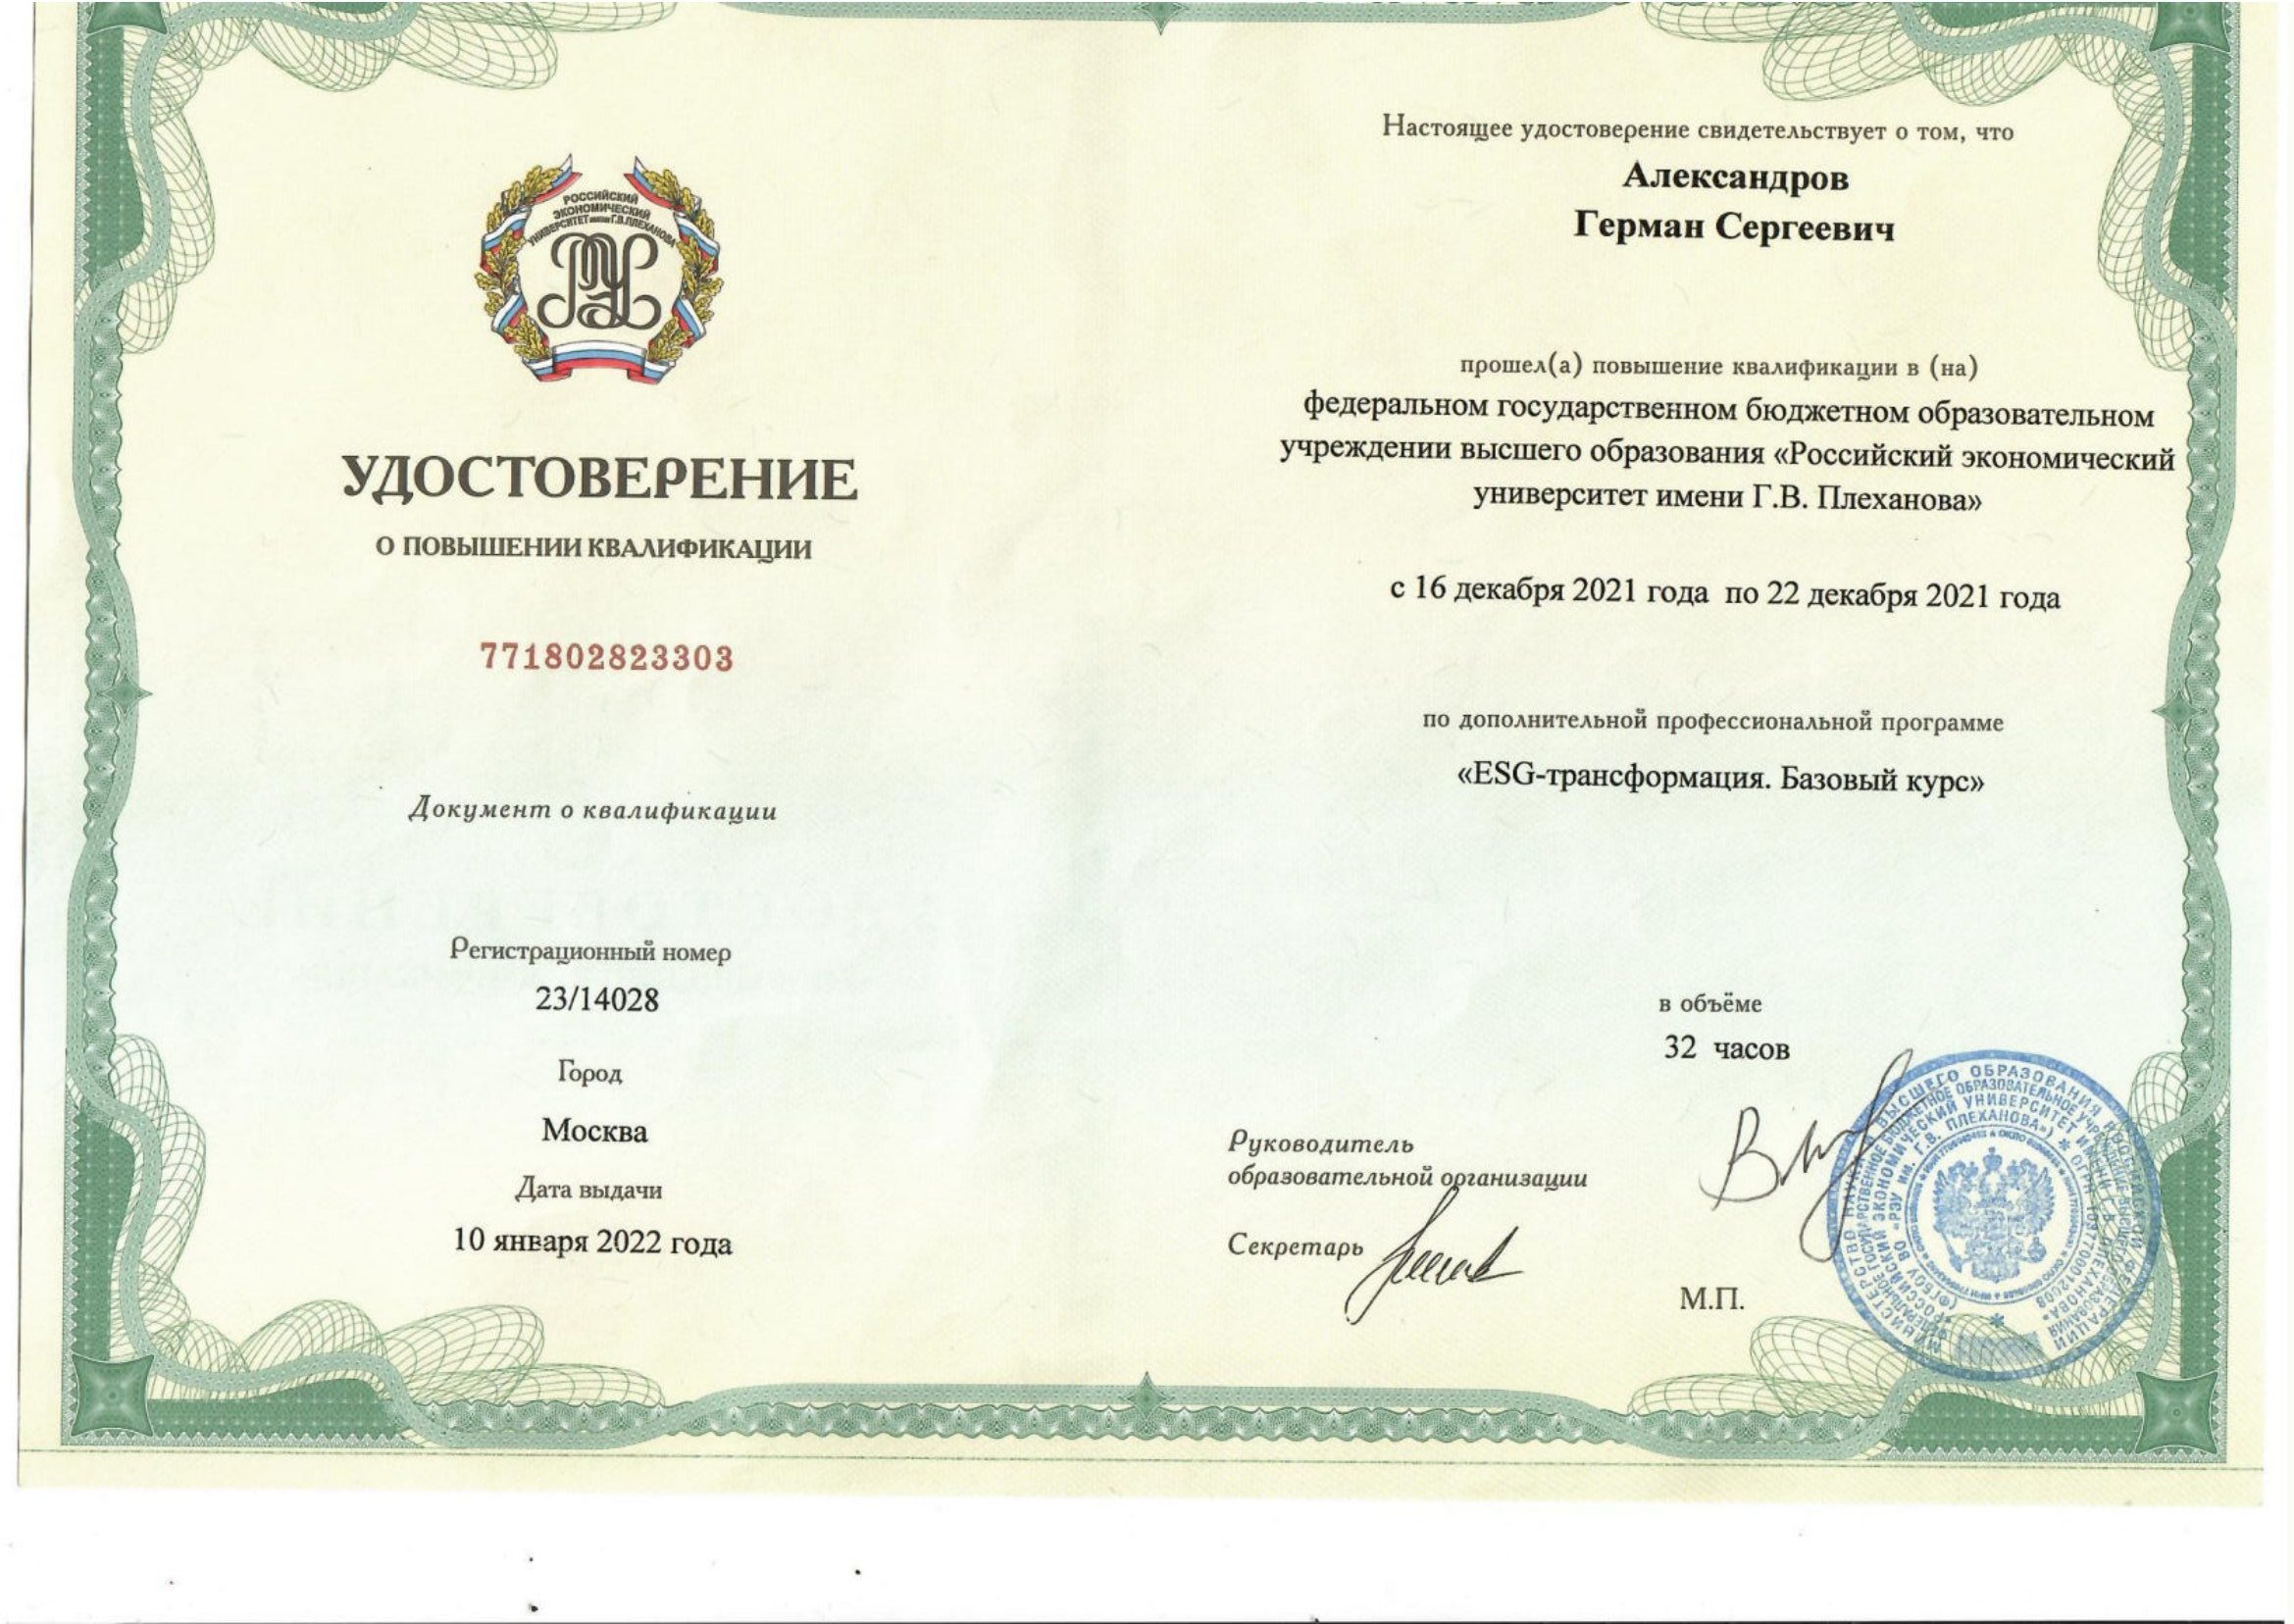  Сертификат повышения квалификации